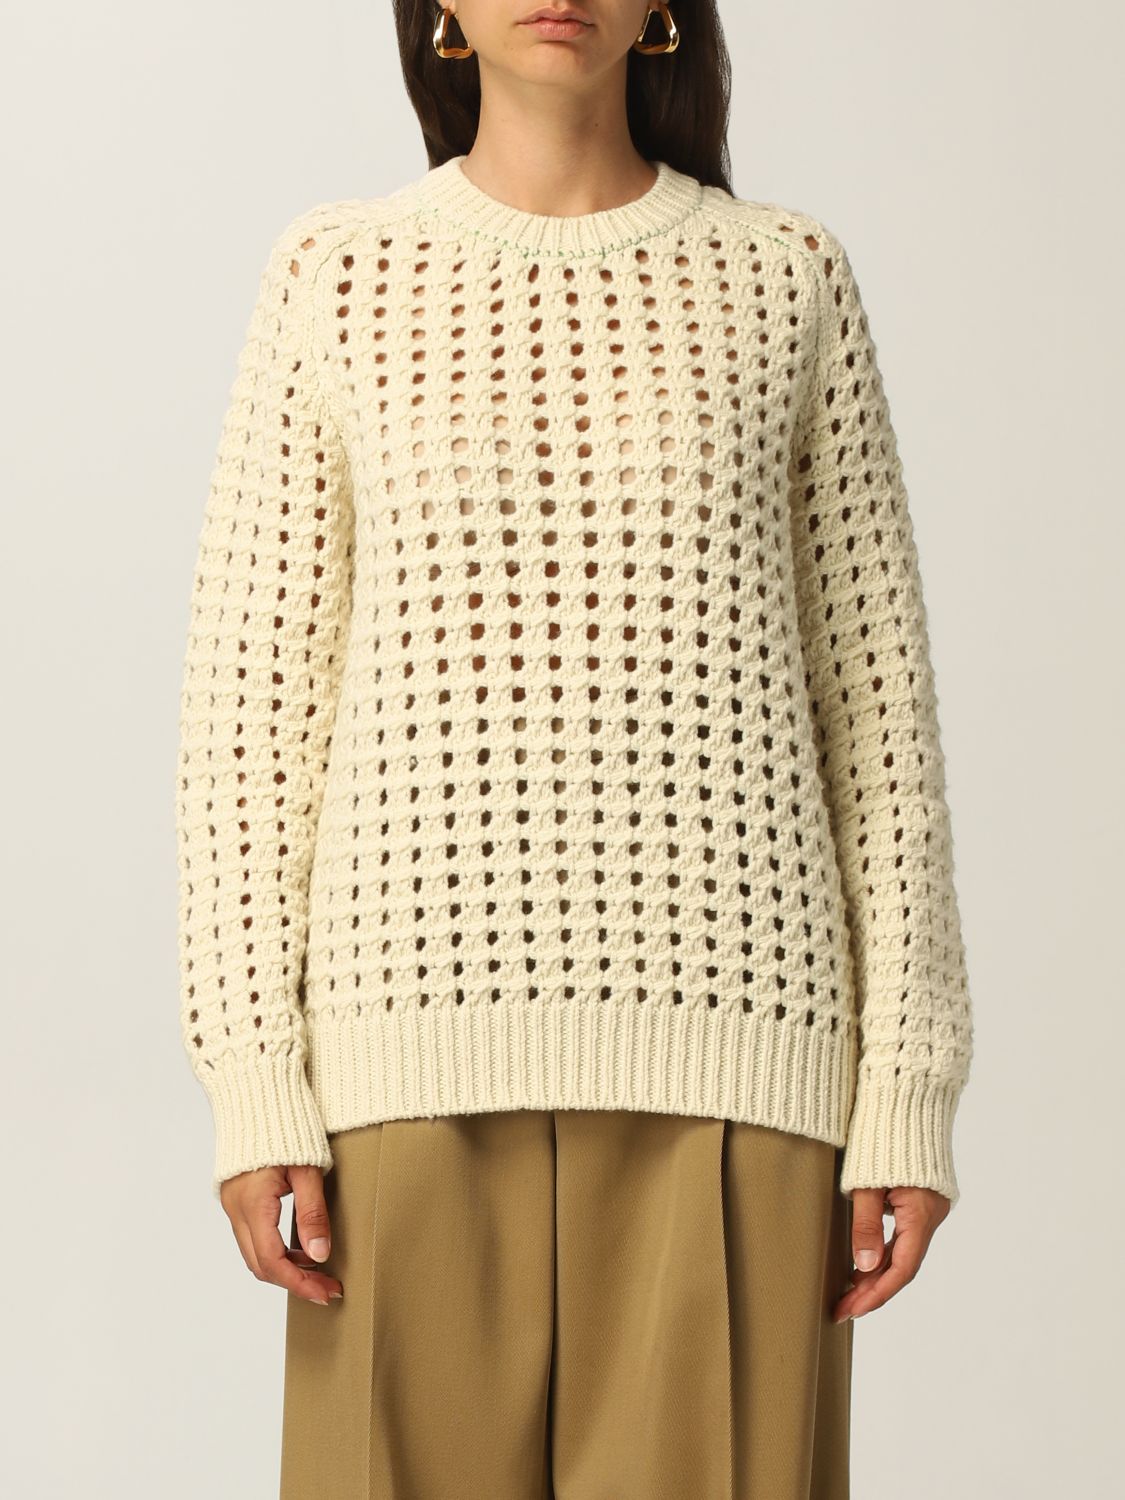 BOTTEGA VENETA: wool sweater with holes - Yellow Cream | Bottega Veneta ...